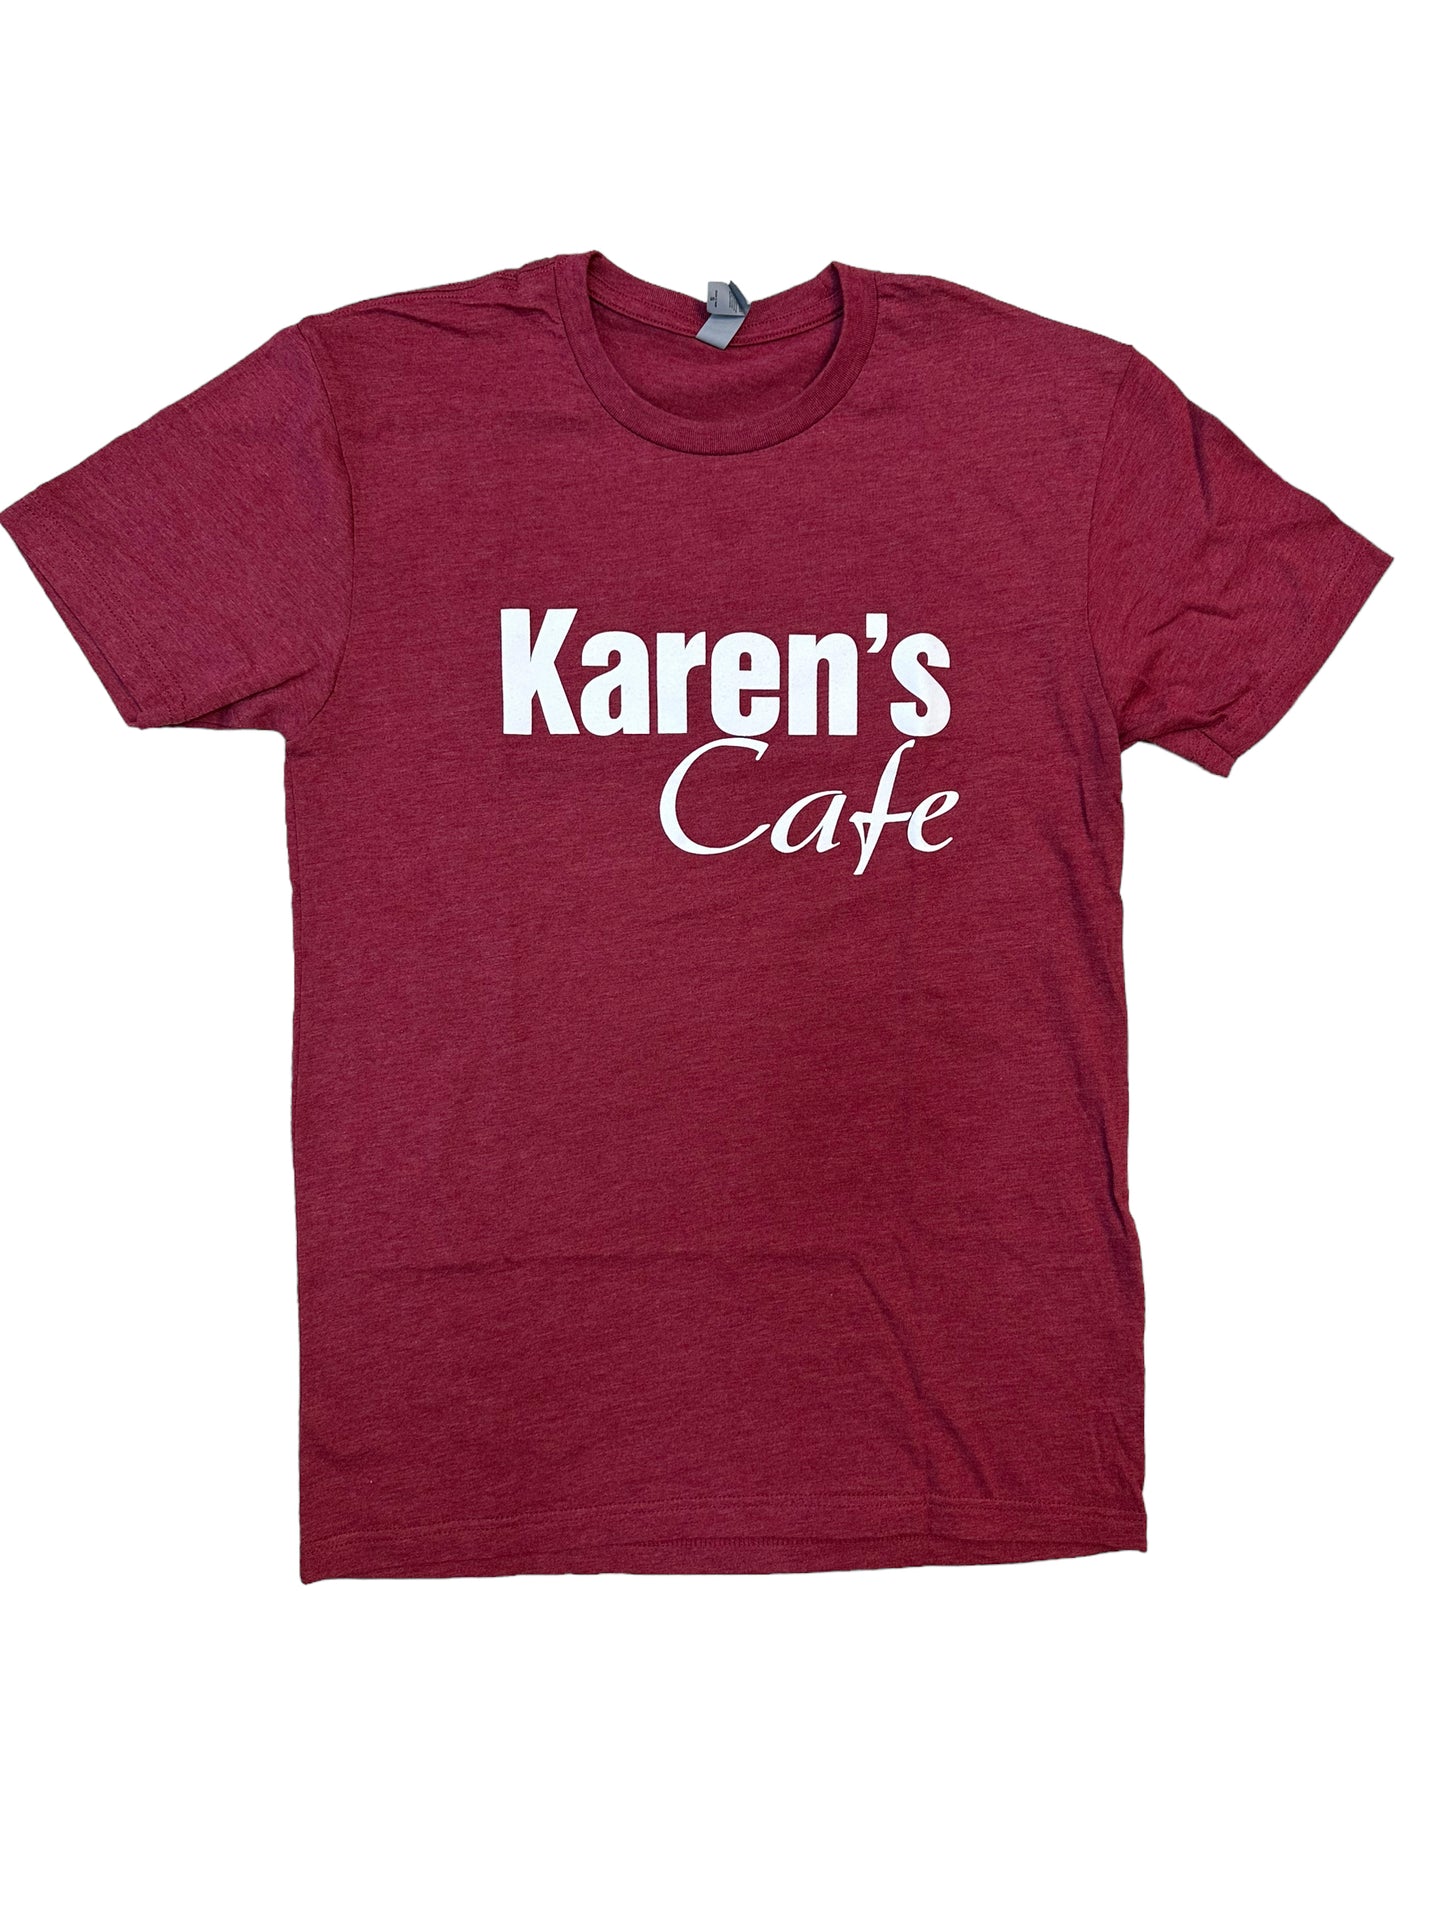 Karens Cafe - T Shirt - Cardinal red